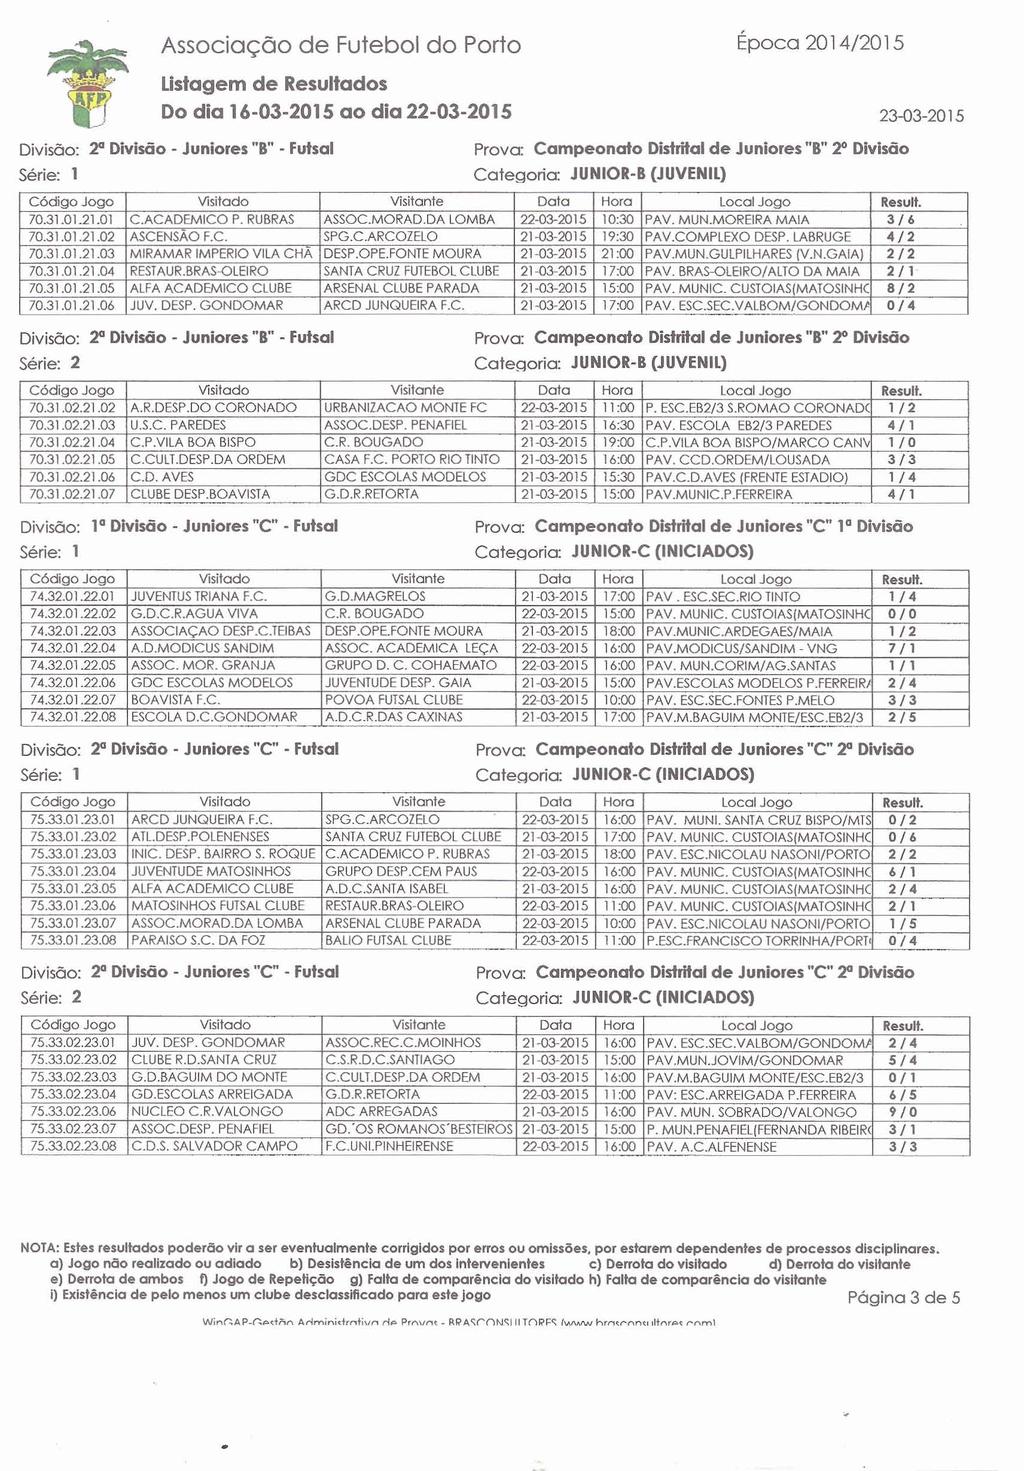 V Associação de Futebol do Porto Época 201 4120 1 5 Ustagem de Resultados Do dia 16-03-2015 ao dia 22-03-2015 23-03-2015 Divisão: 20 Divisão - Juniorer "r' - Futsal Prova Campeonato M a l de Juniores